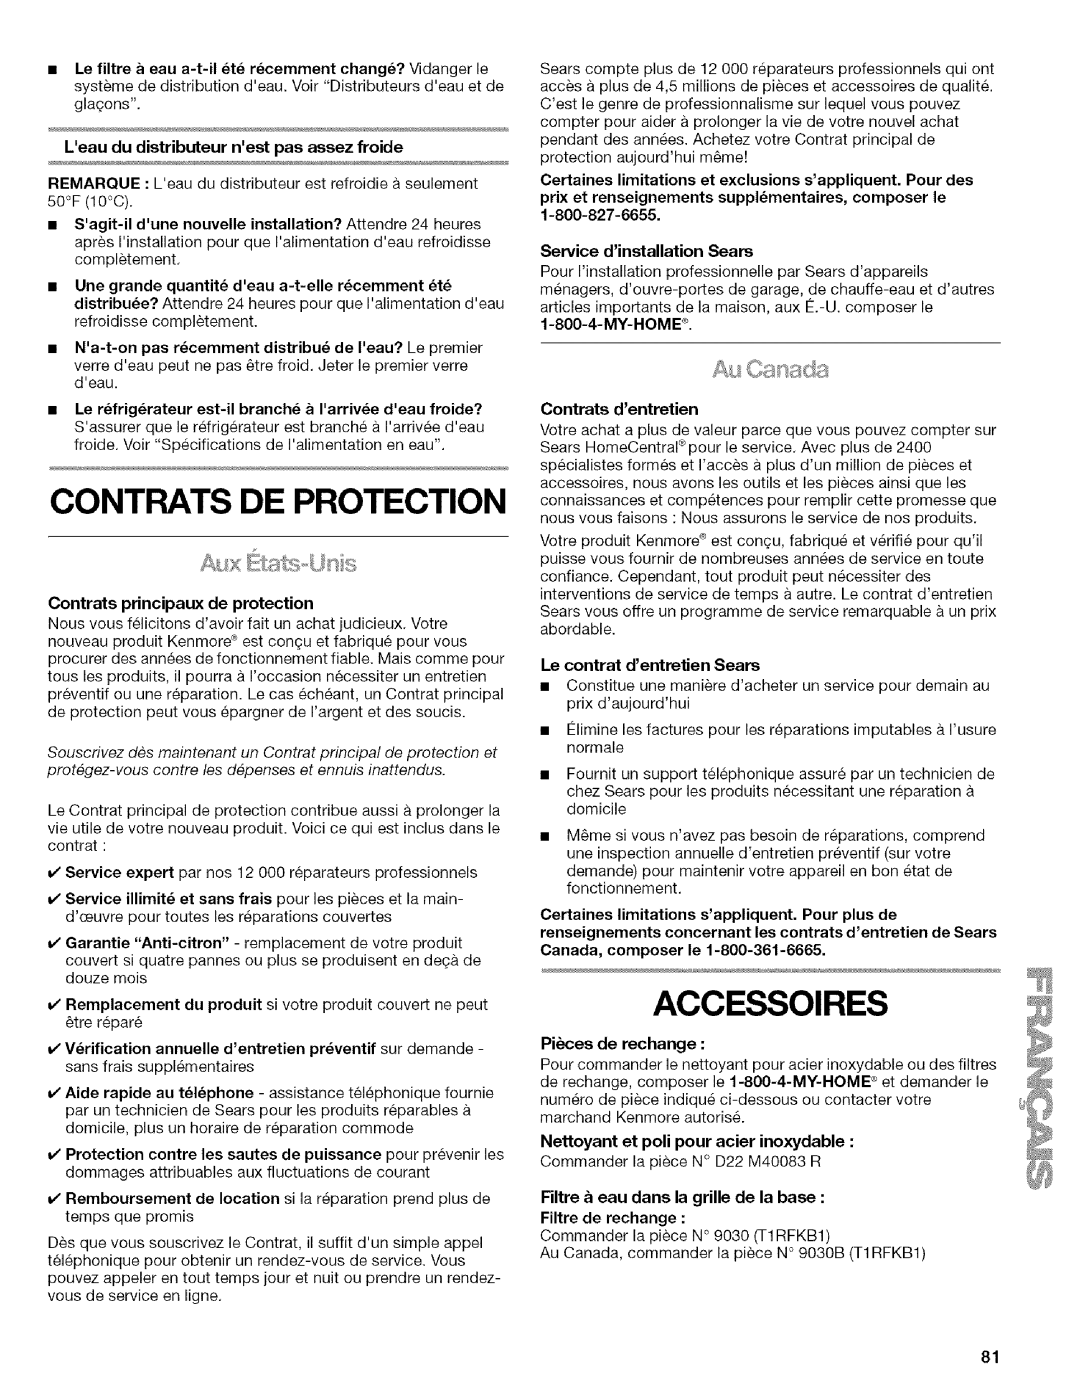 Kenmore 2318589 Contrats De Protection, Accessoires, Leaudu distributeur nestpas assez froide, Service dinstallation Sears 